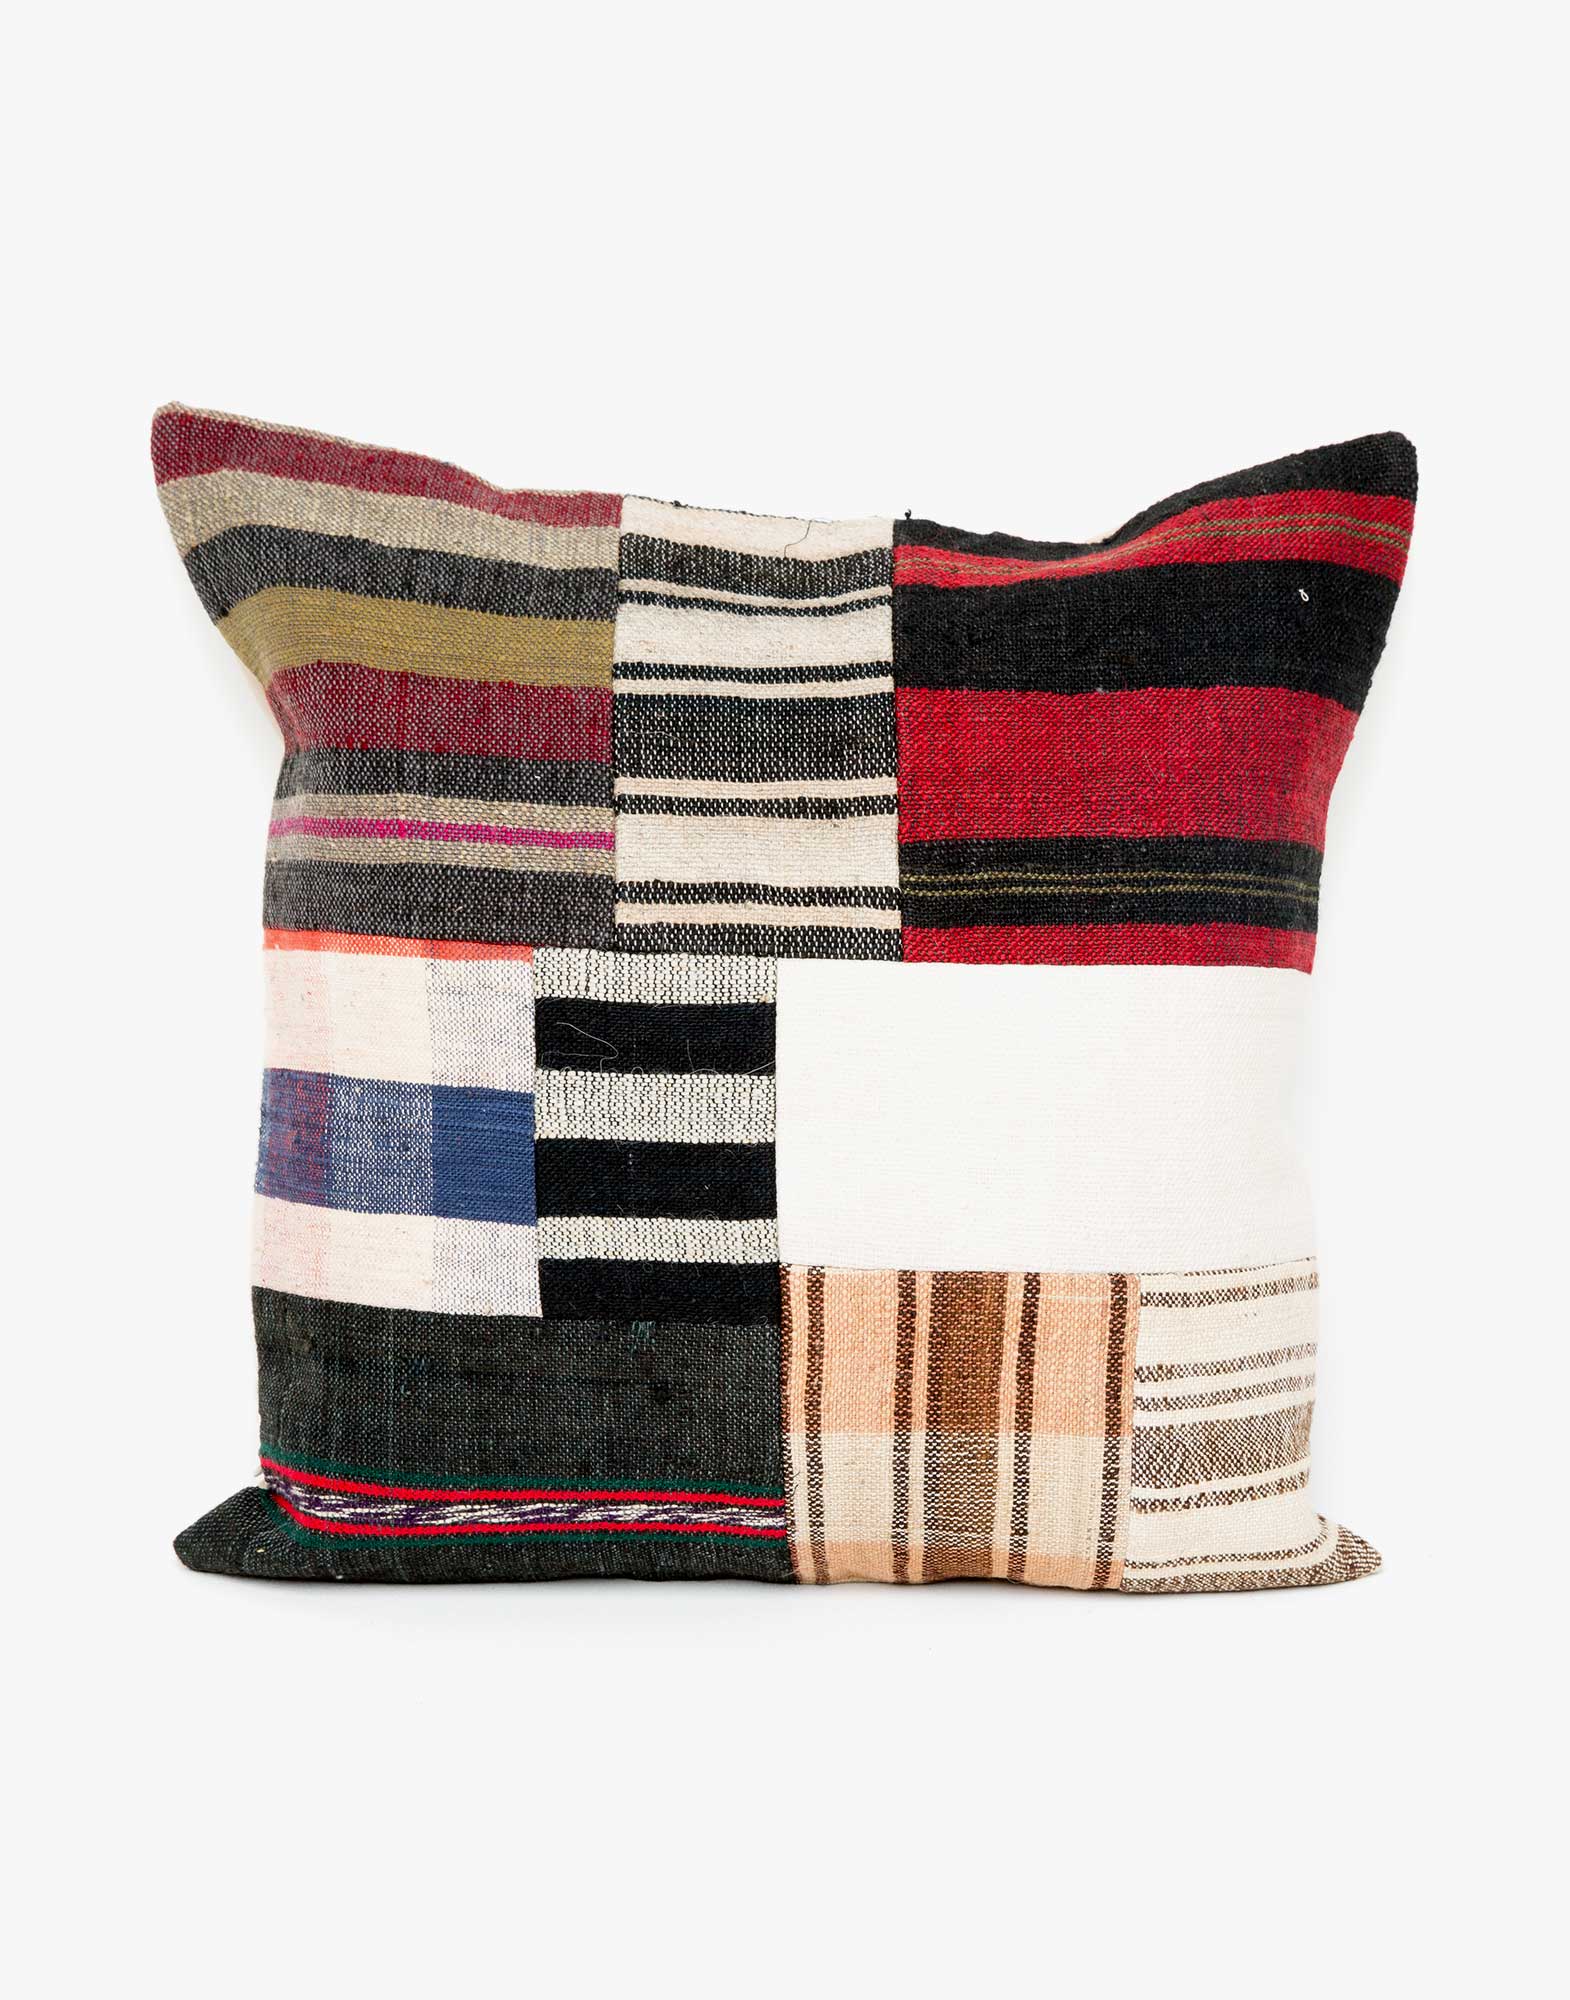 Handwoven Vintage Kilim Patchwork Pillow